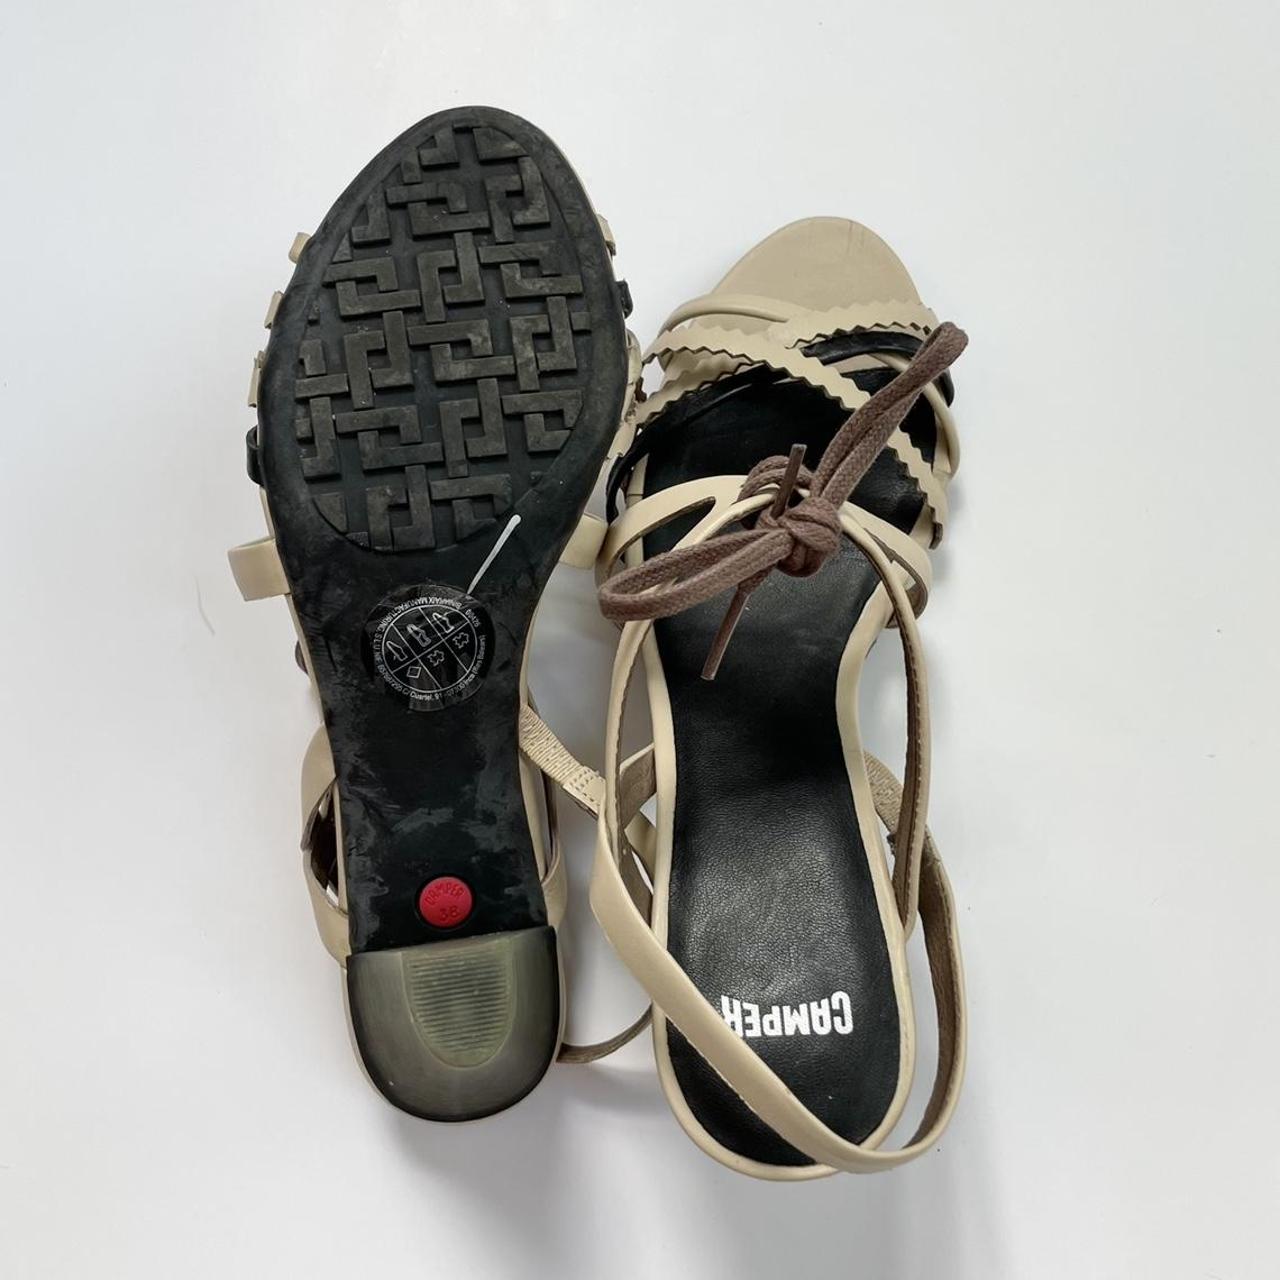 Product Image 4 - Camper Sandals. EU 38

Camper heeled